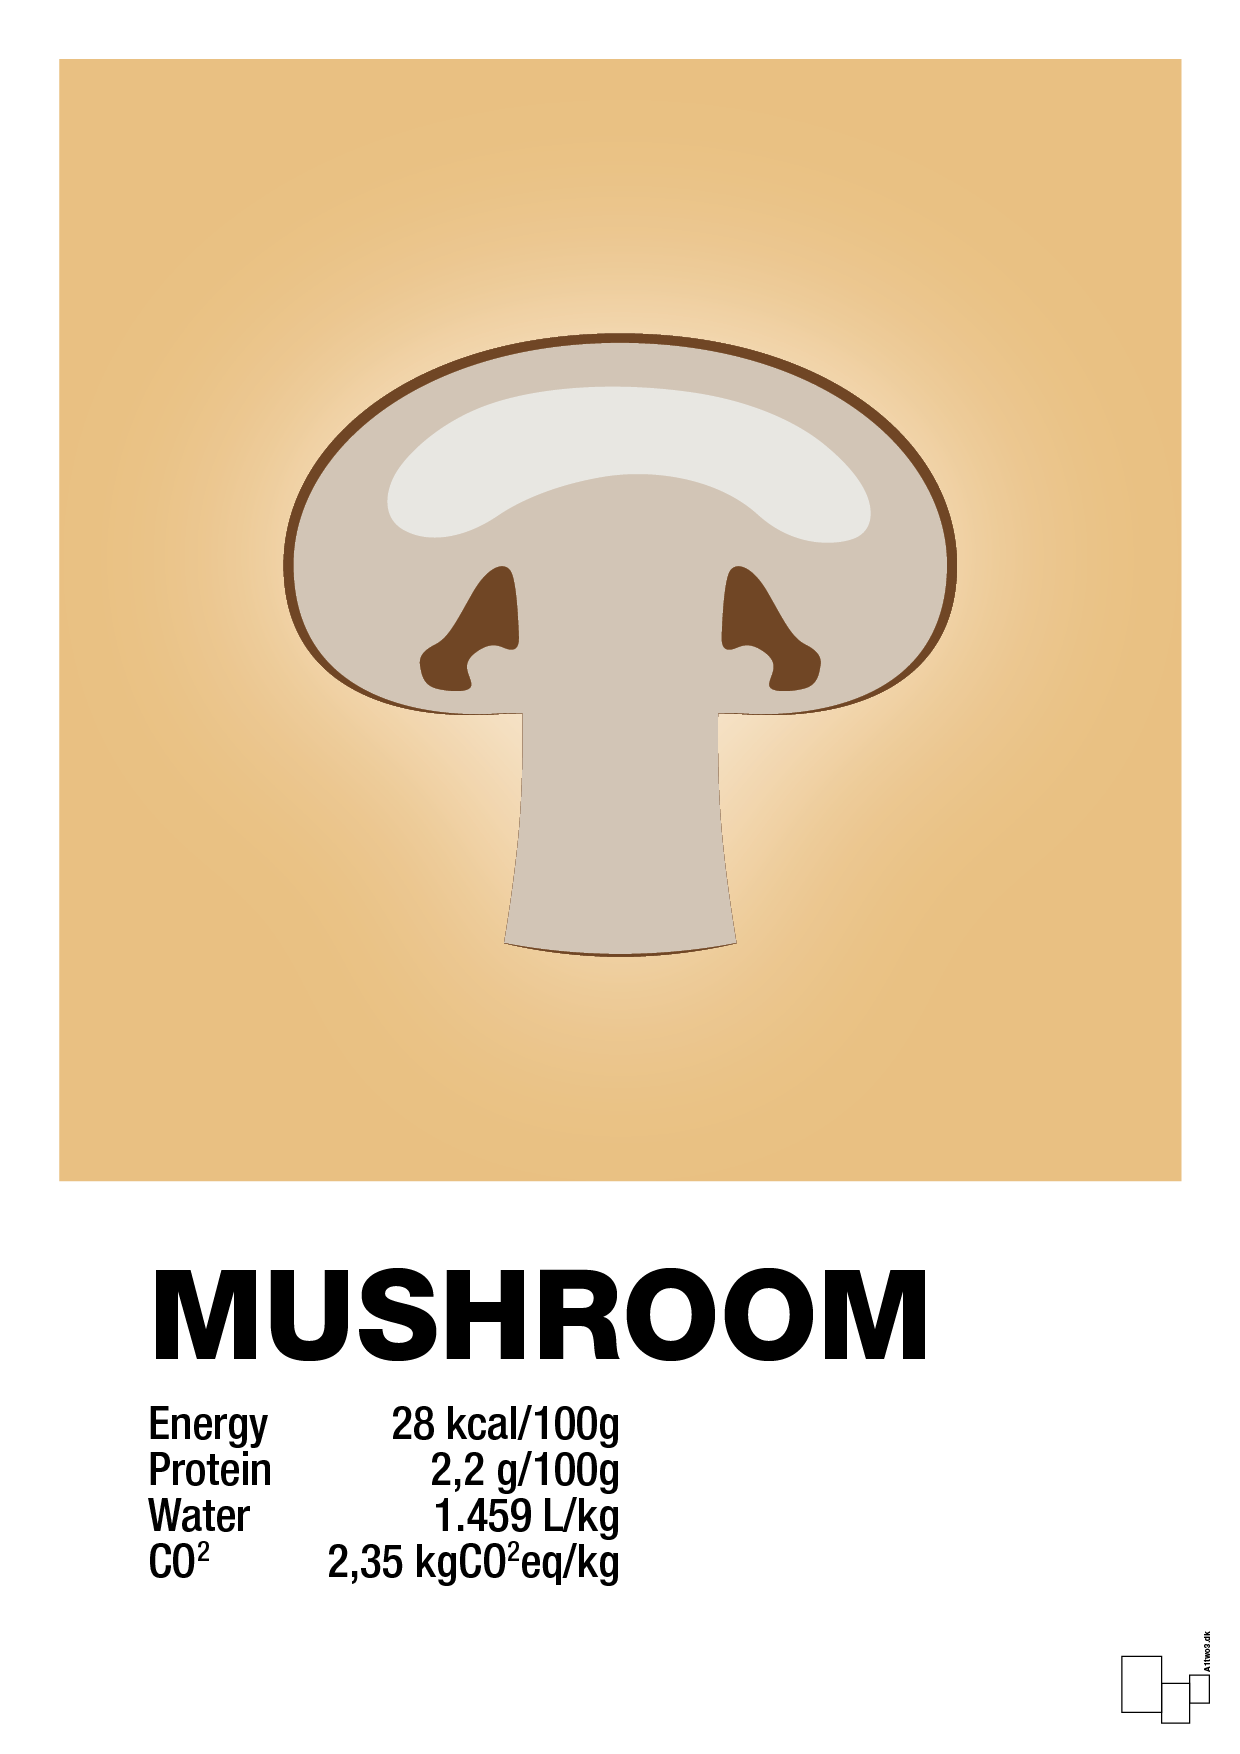 mushroom nutrition og miljø - Plakat med Mad & Drikke i Charismatic